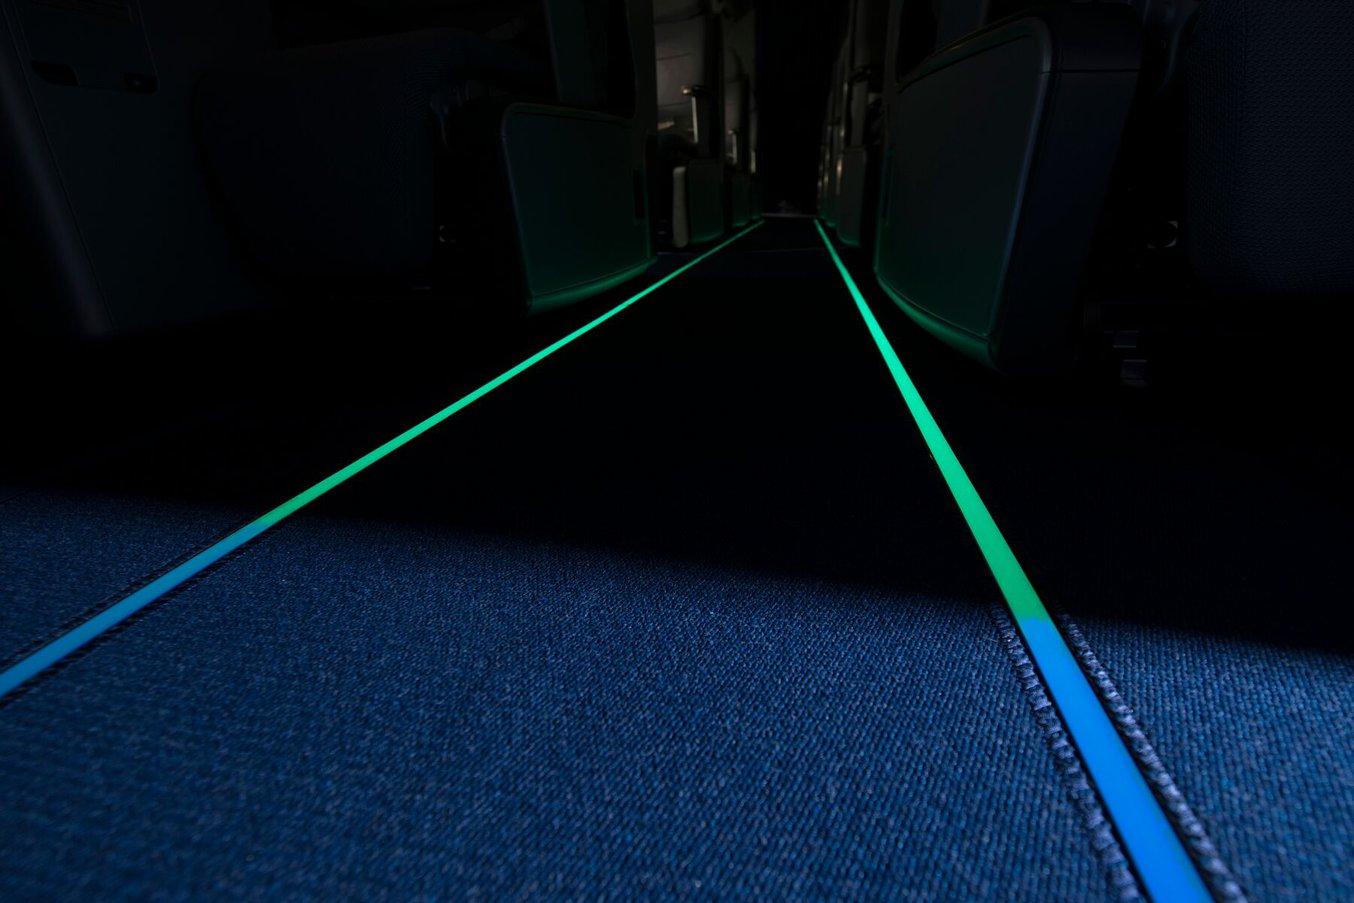 Vue de l'intérieur d'un avion avec des marquages luminescents bleus et verts de voies d'évacuation.